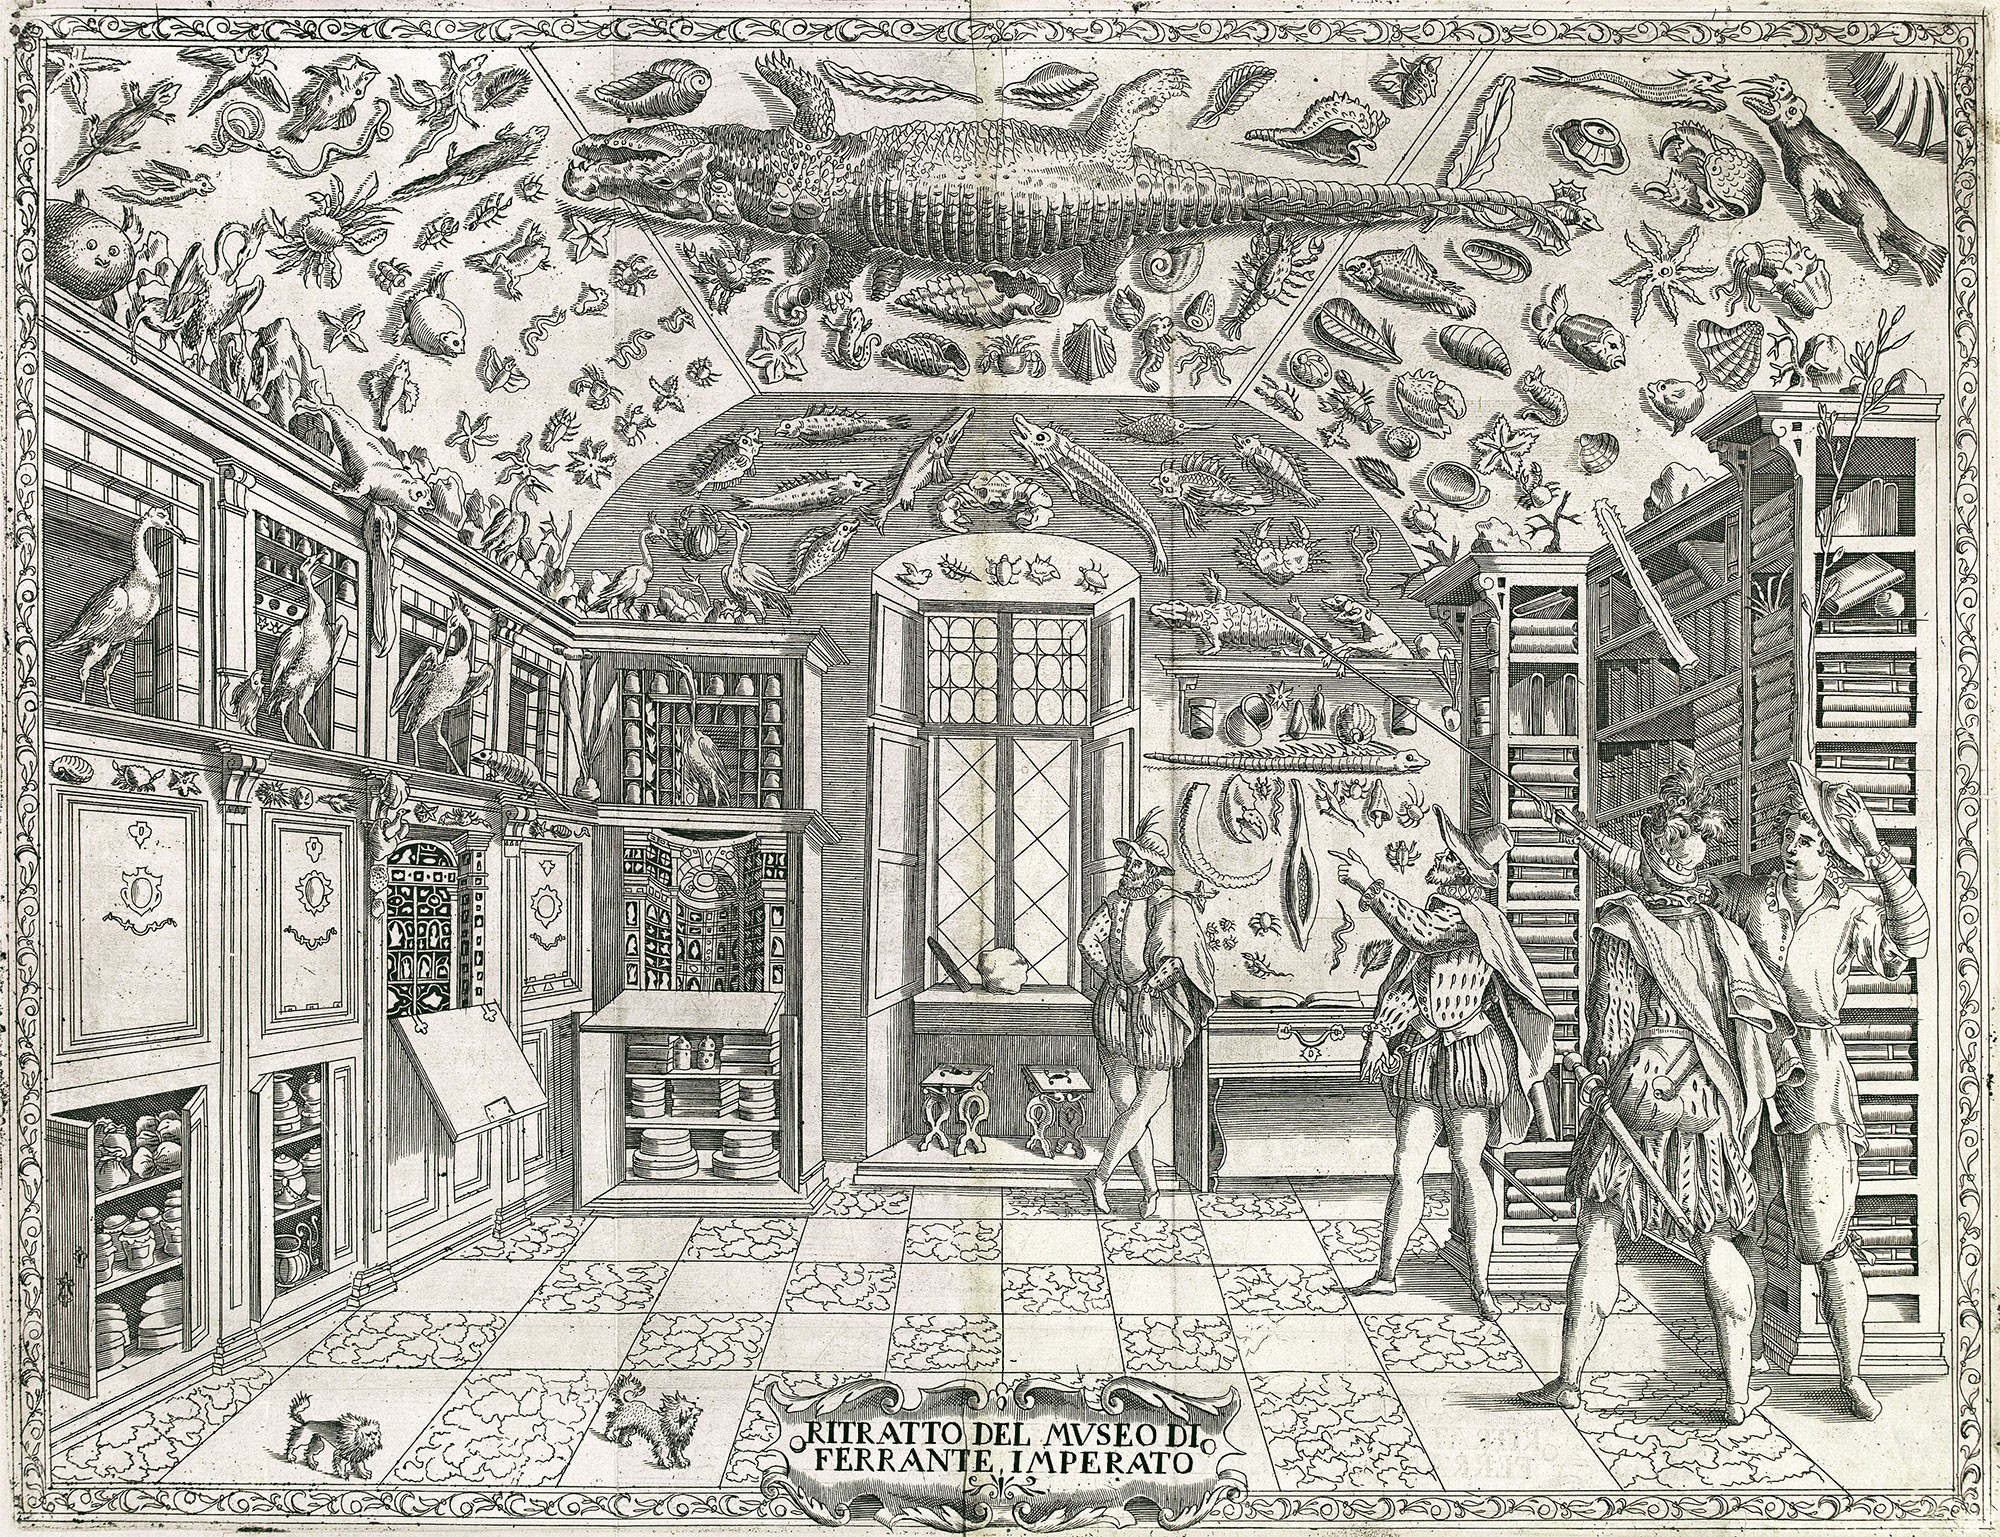 Ferrante Imperato nápolyi gyógyszerész gyűjteménye (1599)